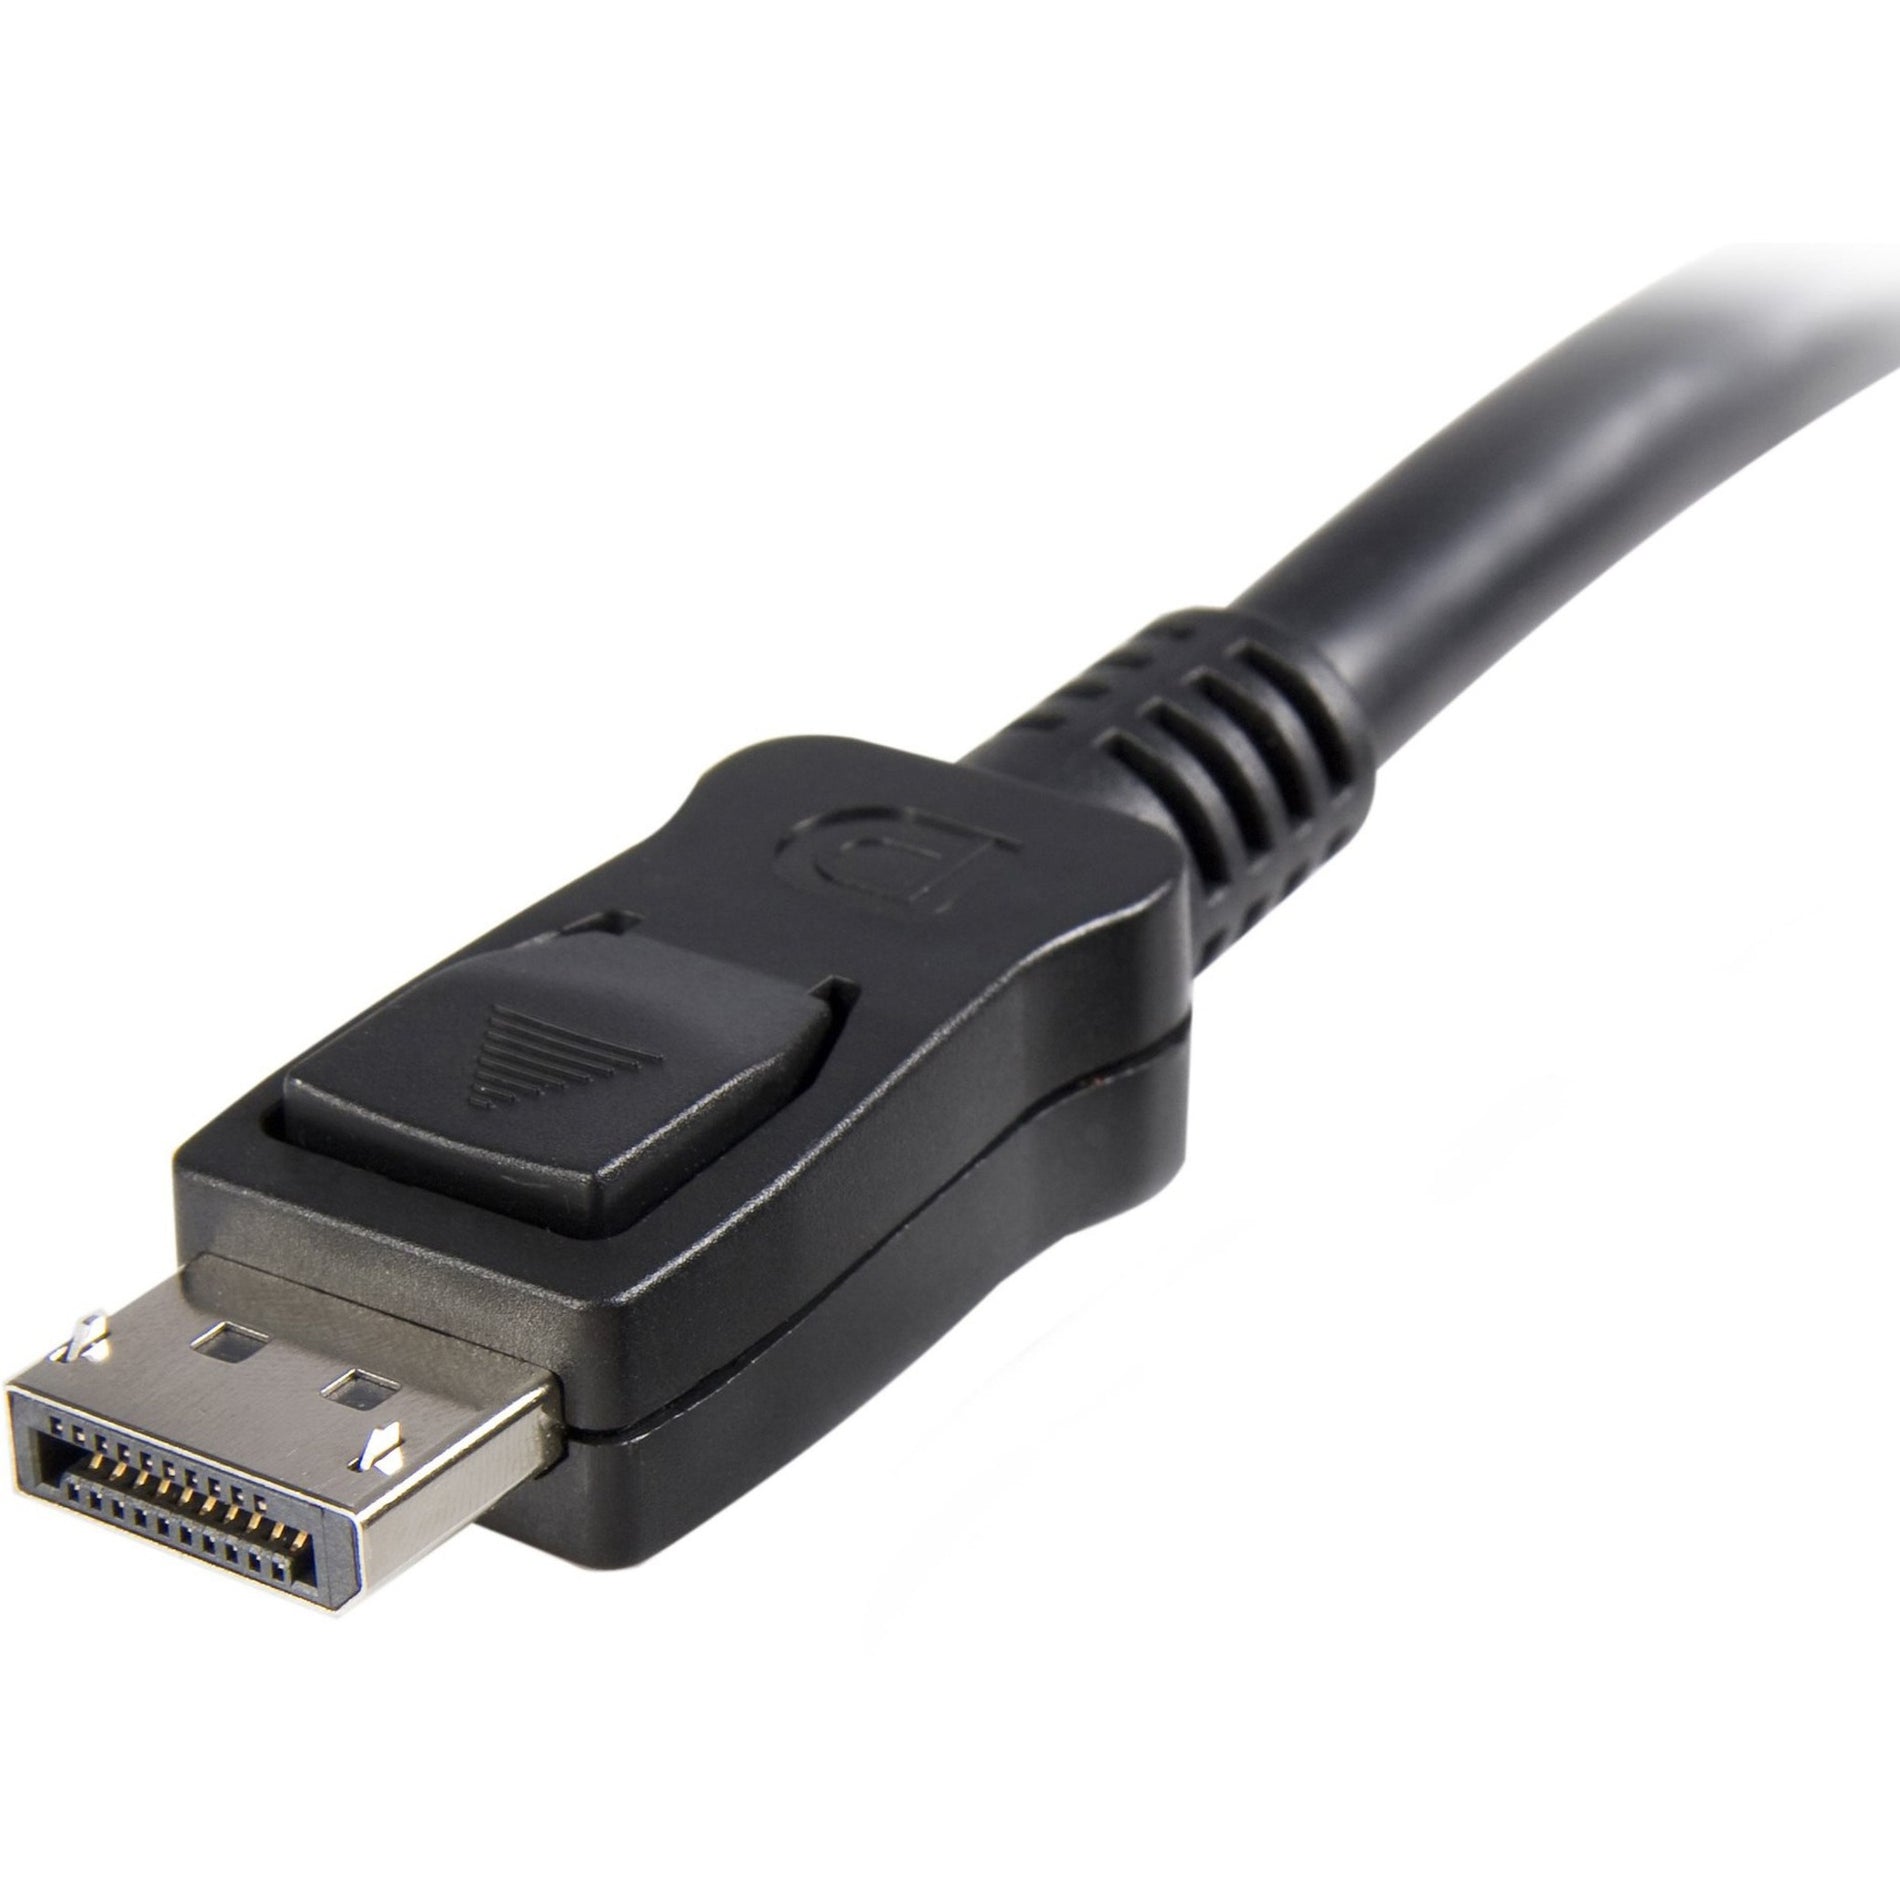 星特科技 (StarTech.com) 显示端口 (DisplayPort) 20英尺显示端口线缆 带扣锁 - 男/男 高速视频线缆 适用于笔记本电脑、显示器等